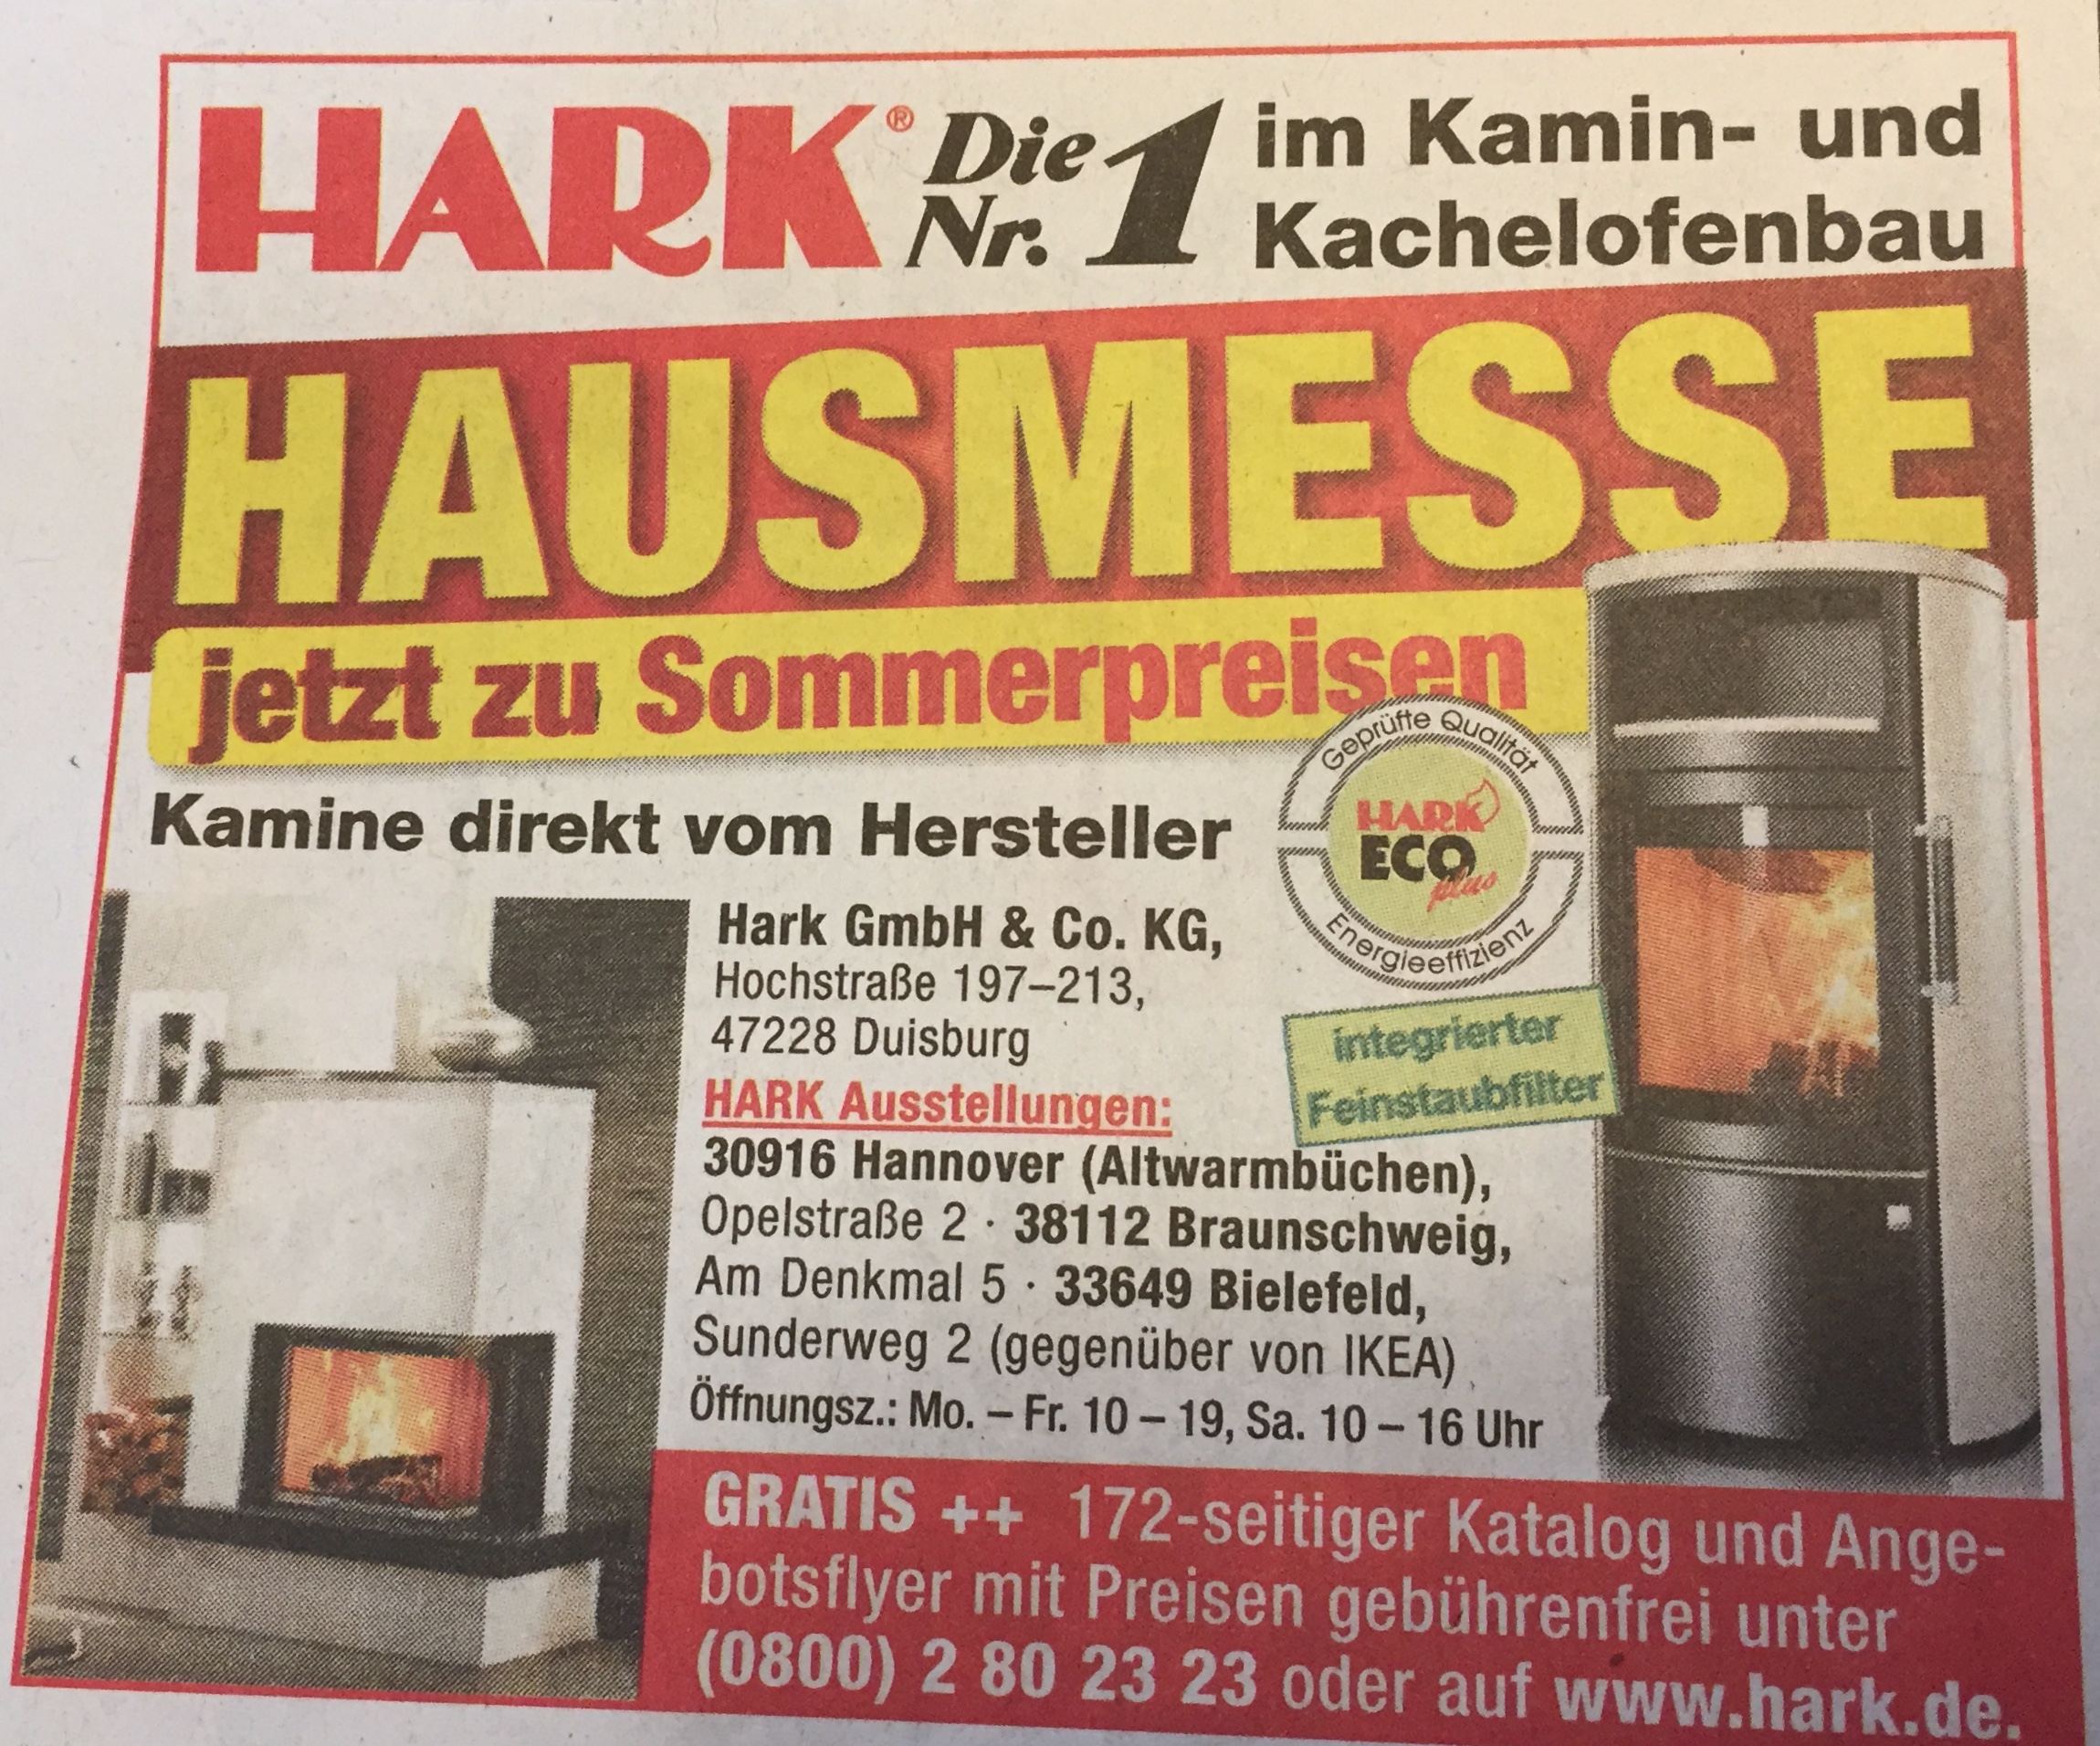 Hark GmbH & Co. KG Kamin- und Kachelofenbau in 47228 Duisburg-Hochemmerich